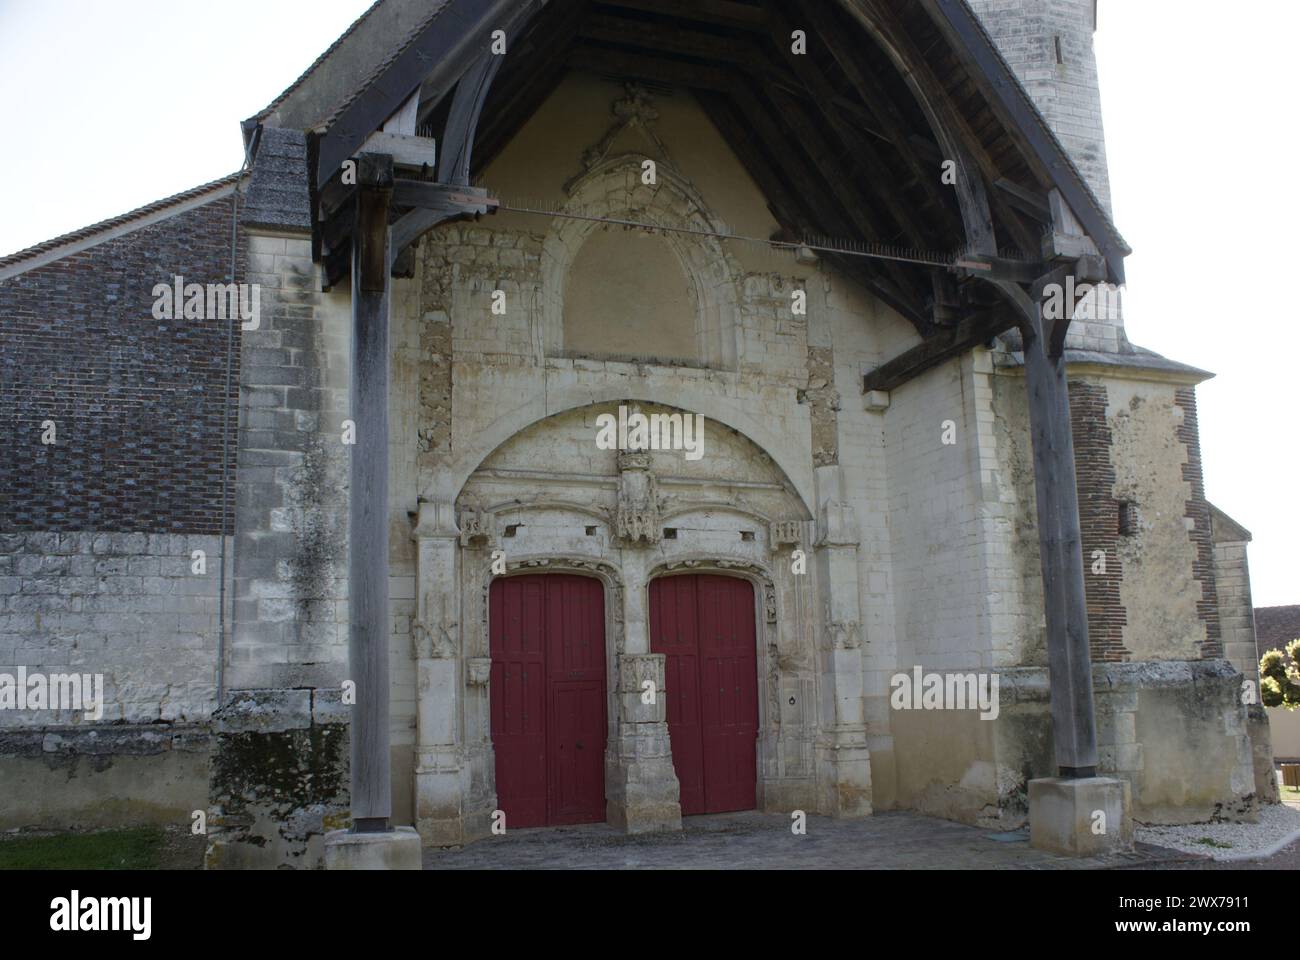 L’église Saint-Pierre-aux-Liens a été édifiée au début du XVIe s. avec des matériaux locaux, soubassement en maçonnerie de silex avec mortier de chaux Stock Photo